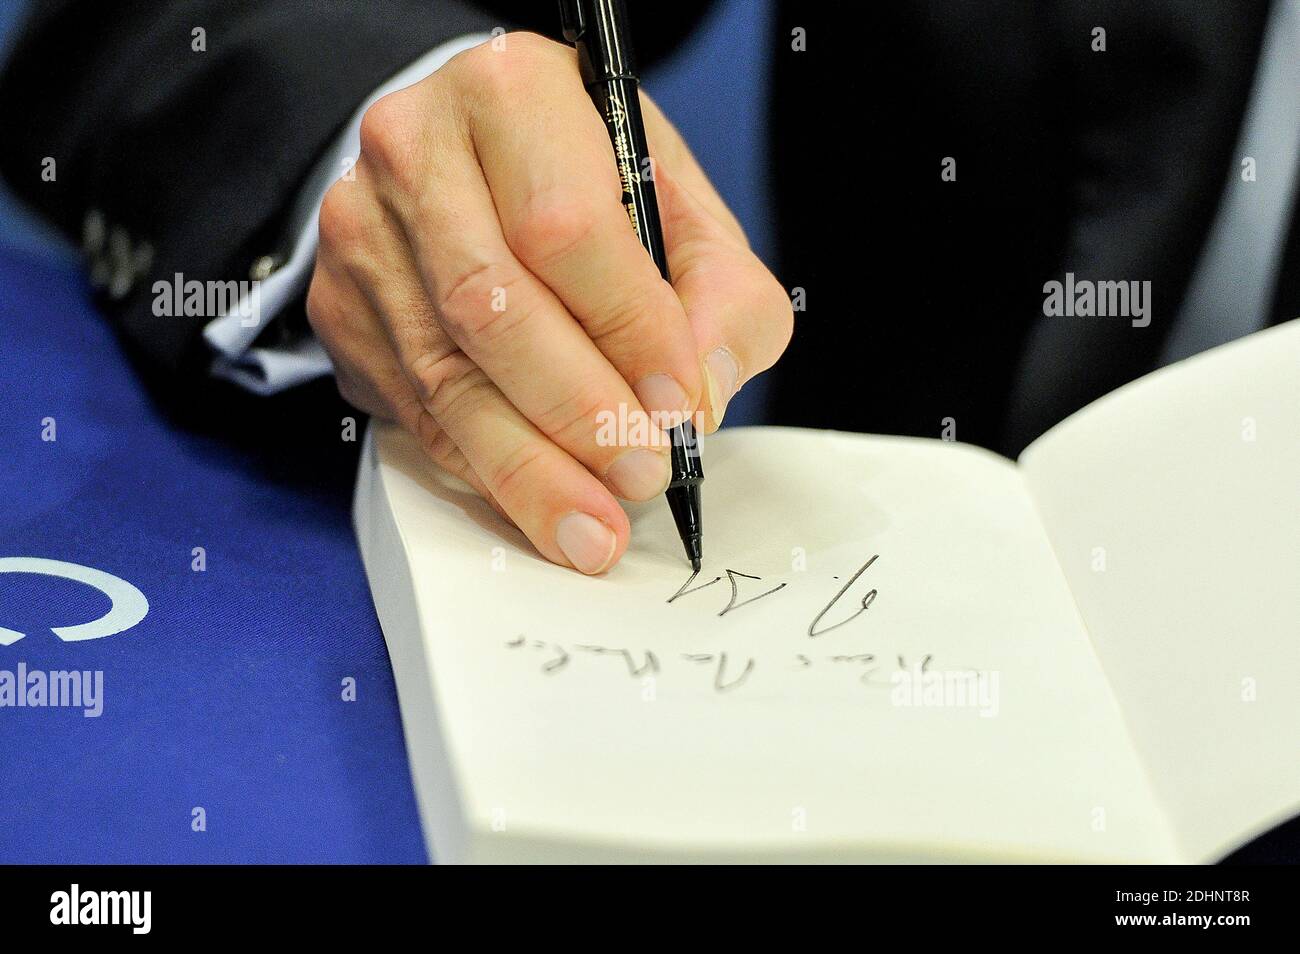 L'ex presidente francese e capo del principale partito di opposizione dei Repubblicani Nicolas Sarkozy firma copie del suo ultimo libro "la France pour la vie" (Francia per la vita) presso la libreria Cultura di Creil-Saint-Maximin, vicino a Parigi, Francia, il 1° febbraio 2016. Foto di Edouard Bernaux/ABACAPRESS.COM Foto Stock